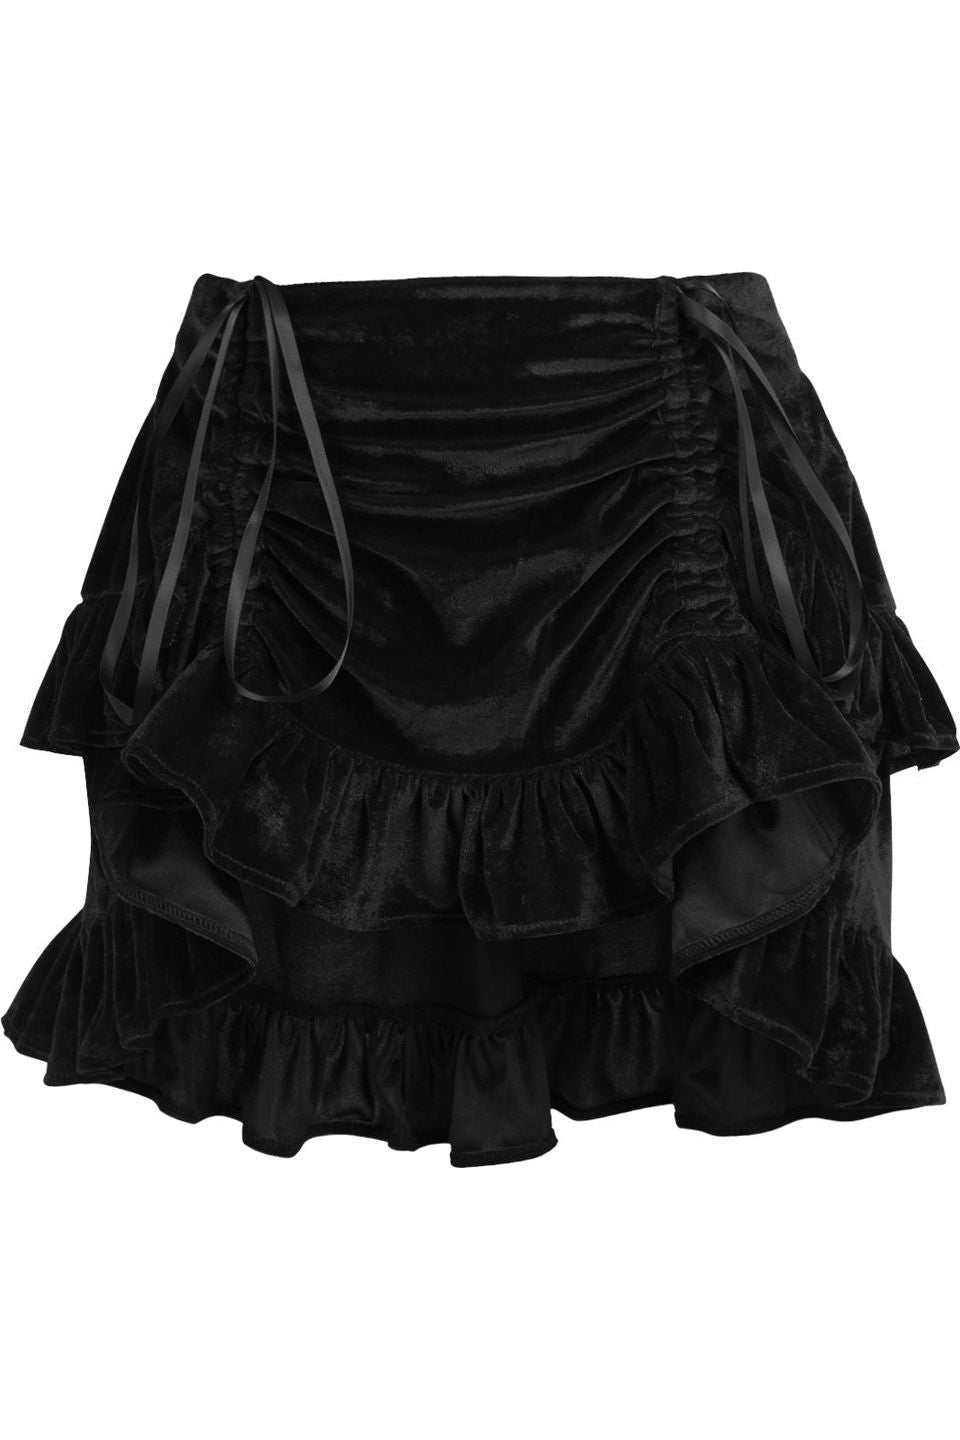 Black Velvet Ruched Bustle Skirt